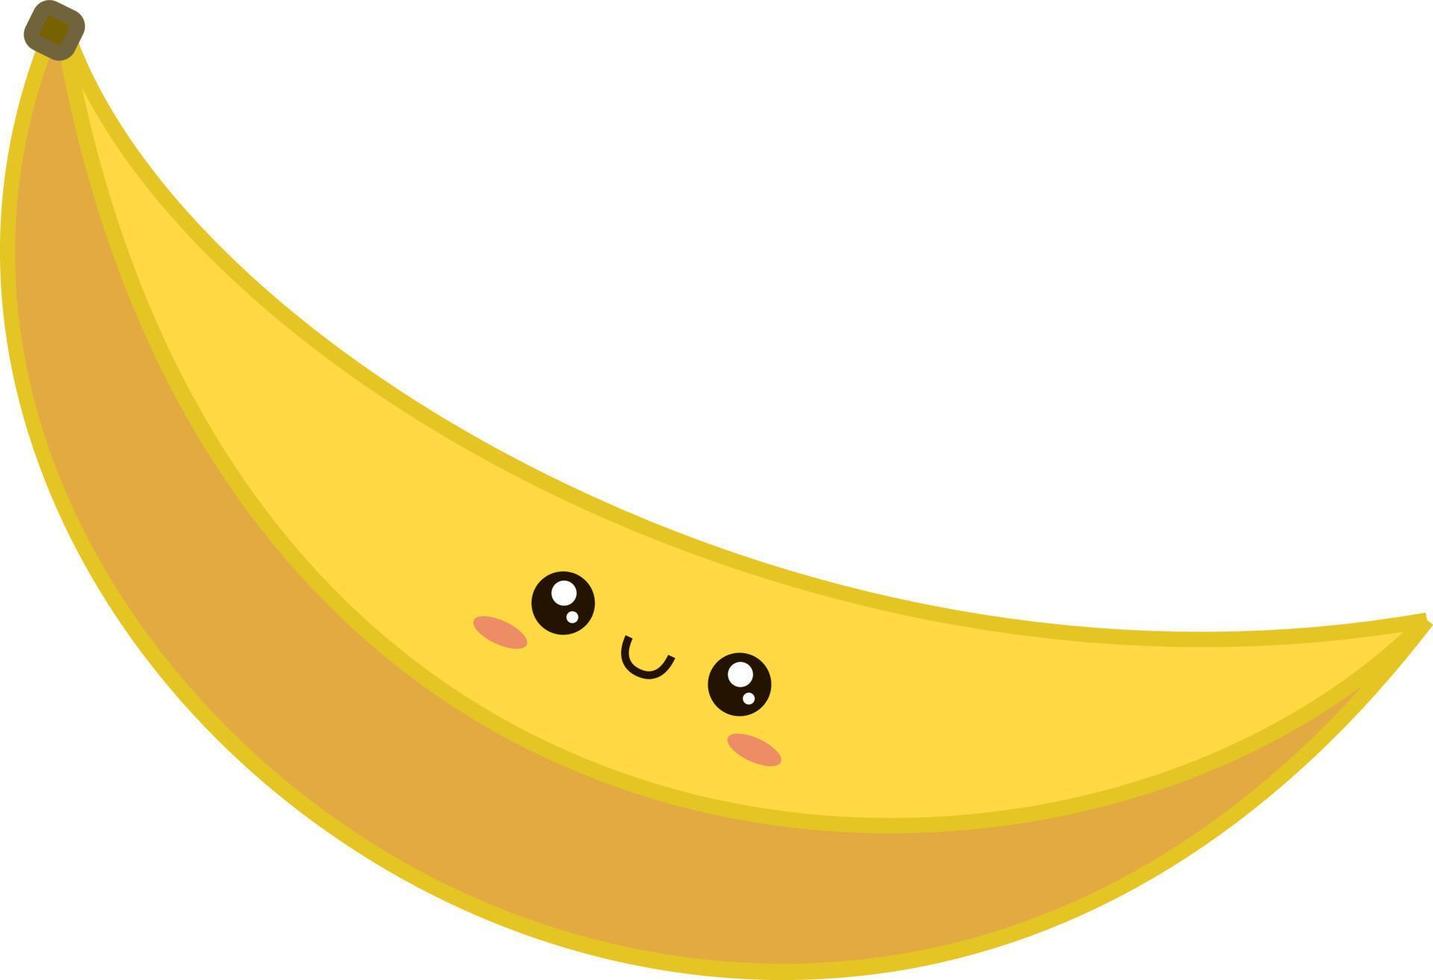 süße Banane, Illustration, Vektor auf weißem Hintergrund.